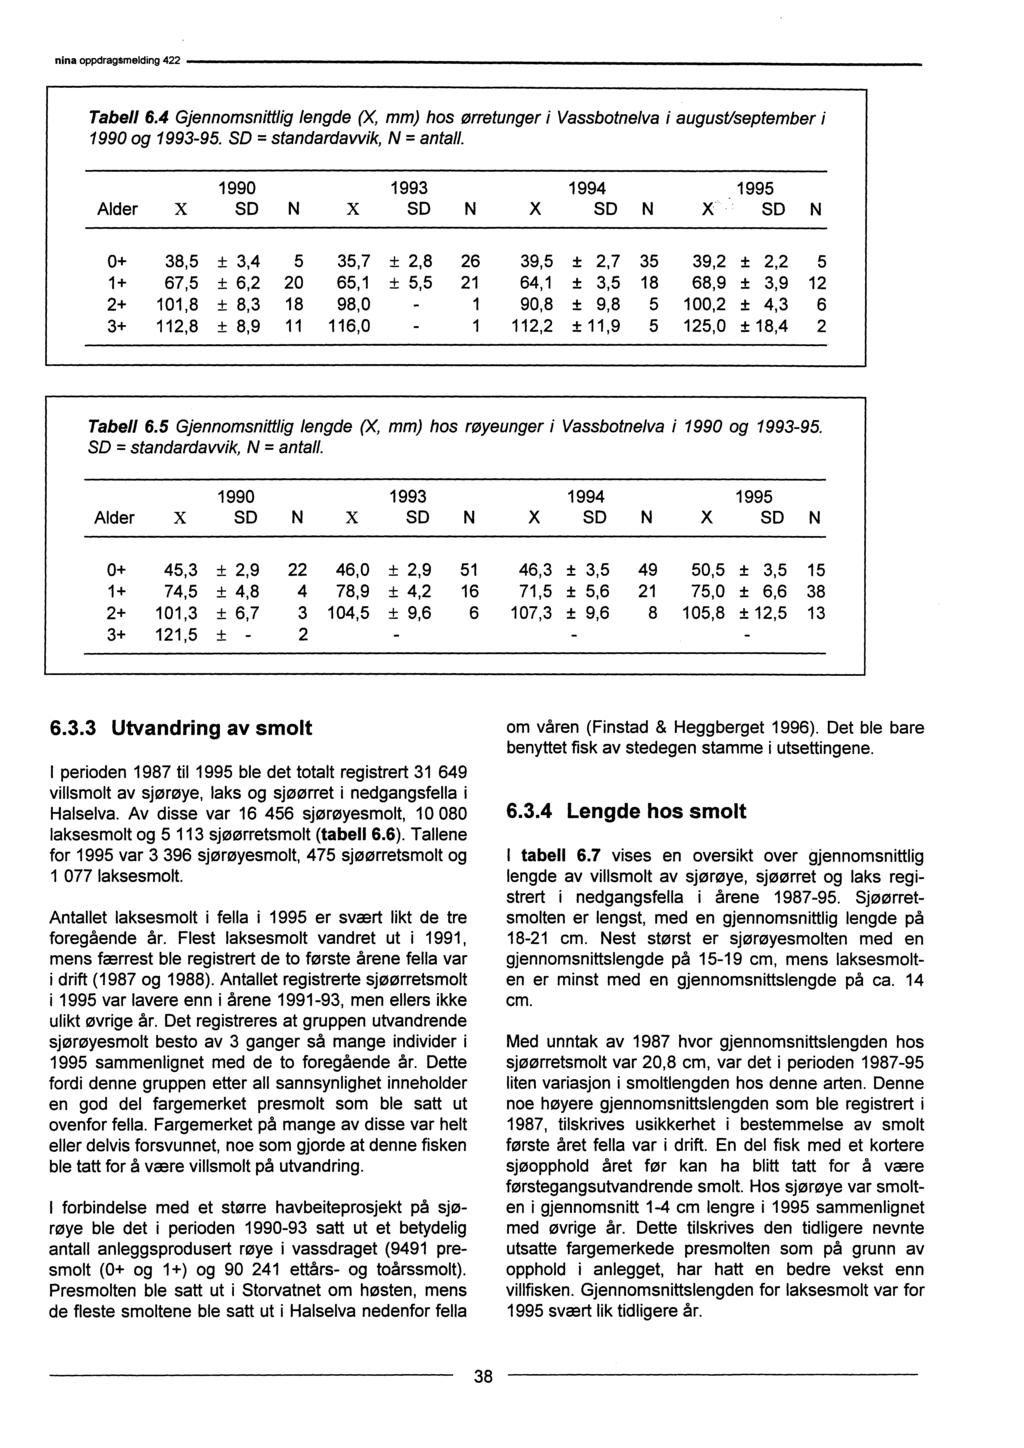 nina oppdrag$melding 422 Tabell 6.4 Gjennomsnittlig lengde(x,mm) hos ørretunger i Vassbotnelva i augustiseptember i 1990 og 1993-95. SD = standardavvik, N = antall.